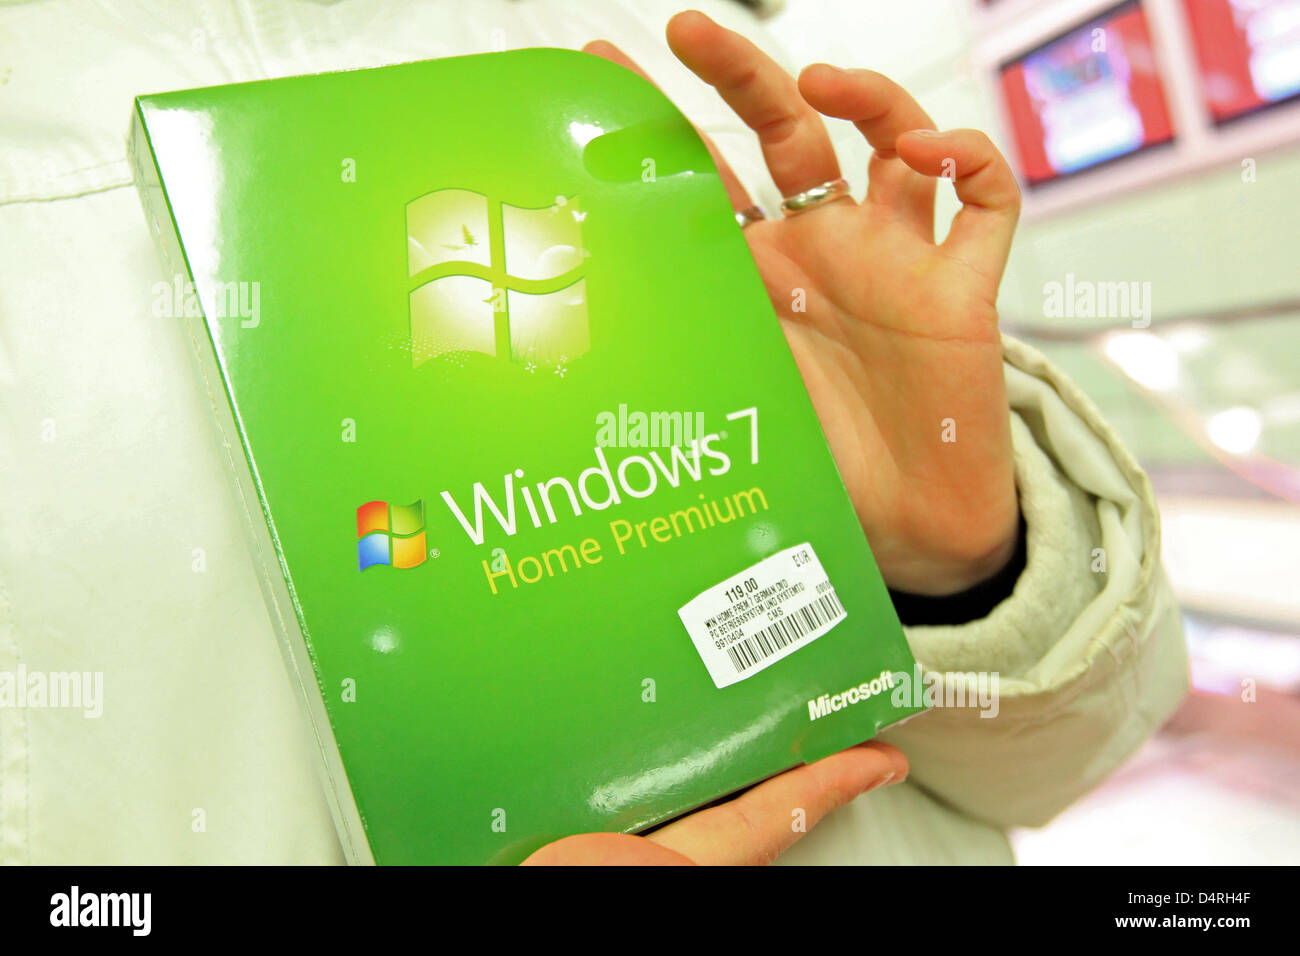 Un cliente tiene un paquete de software del nuevo sistema operativo Windows  7 de Microsoft en frente de una tienda de electrónica de consumo Media Markt  en Hamburgo, Alemania, 22 de octubre